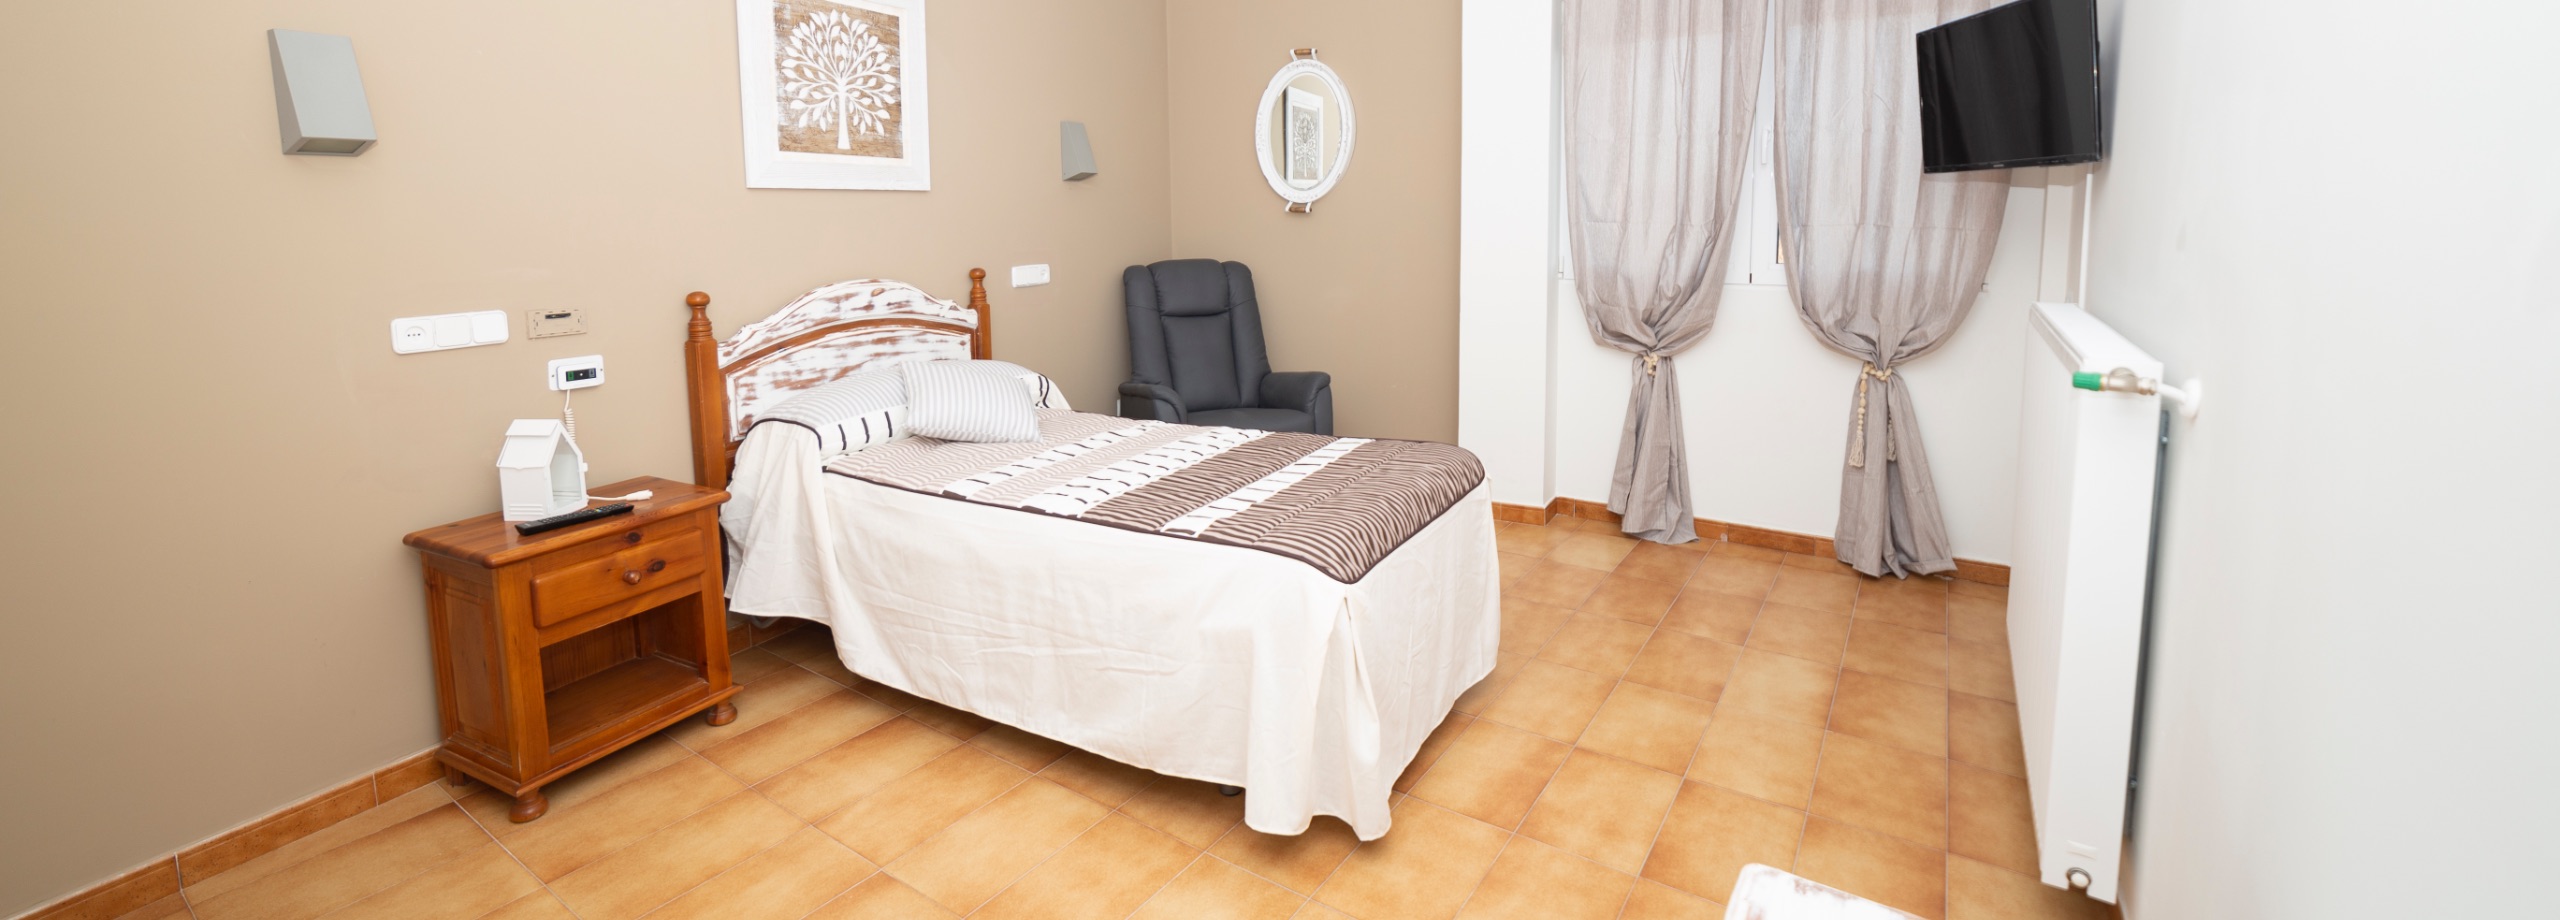 imagen de una habitacion individual de la residencia de mayores Manzanares